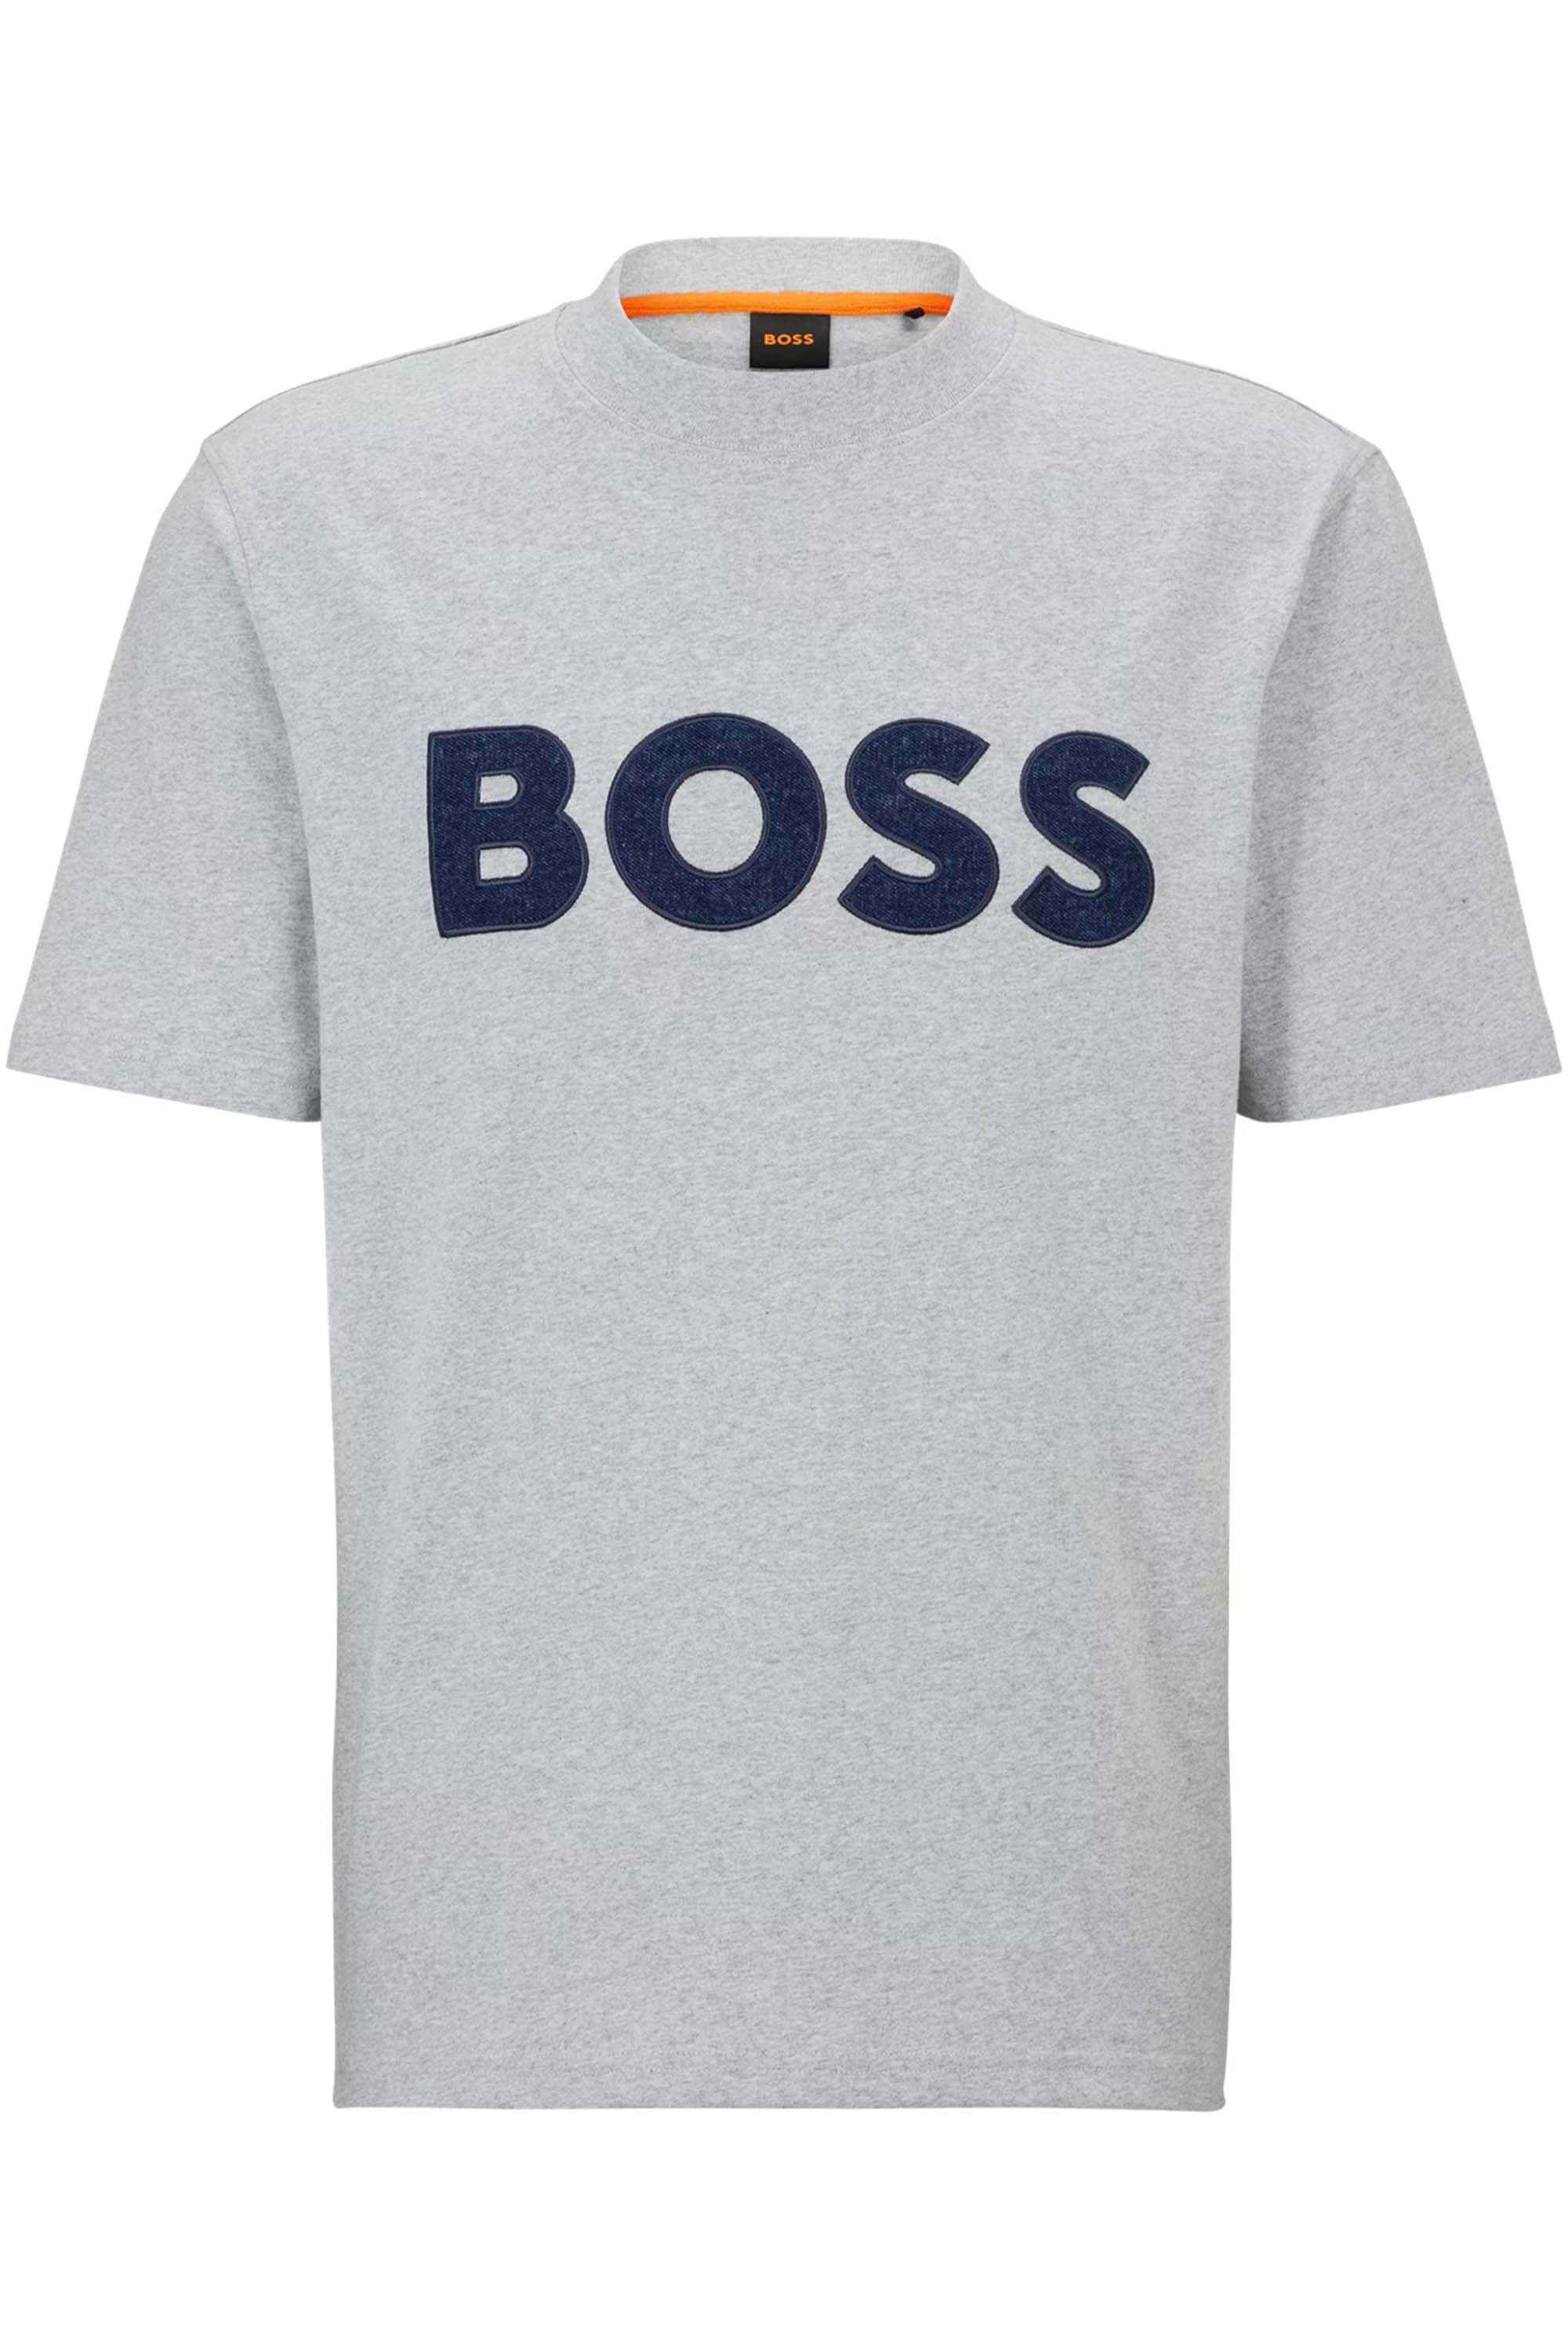 Hugo Boss TeDenimlogo T-Shirt